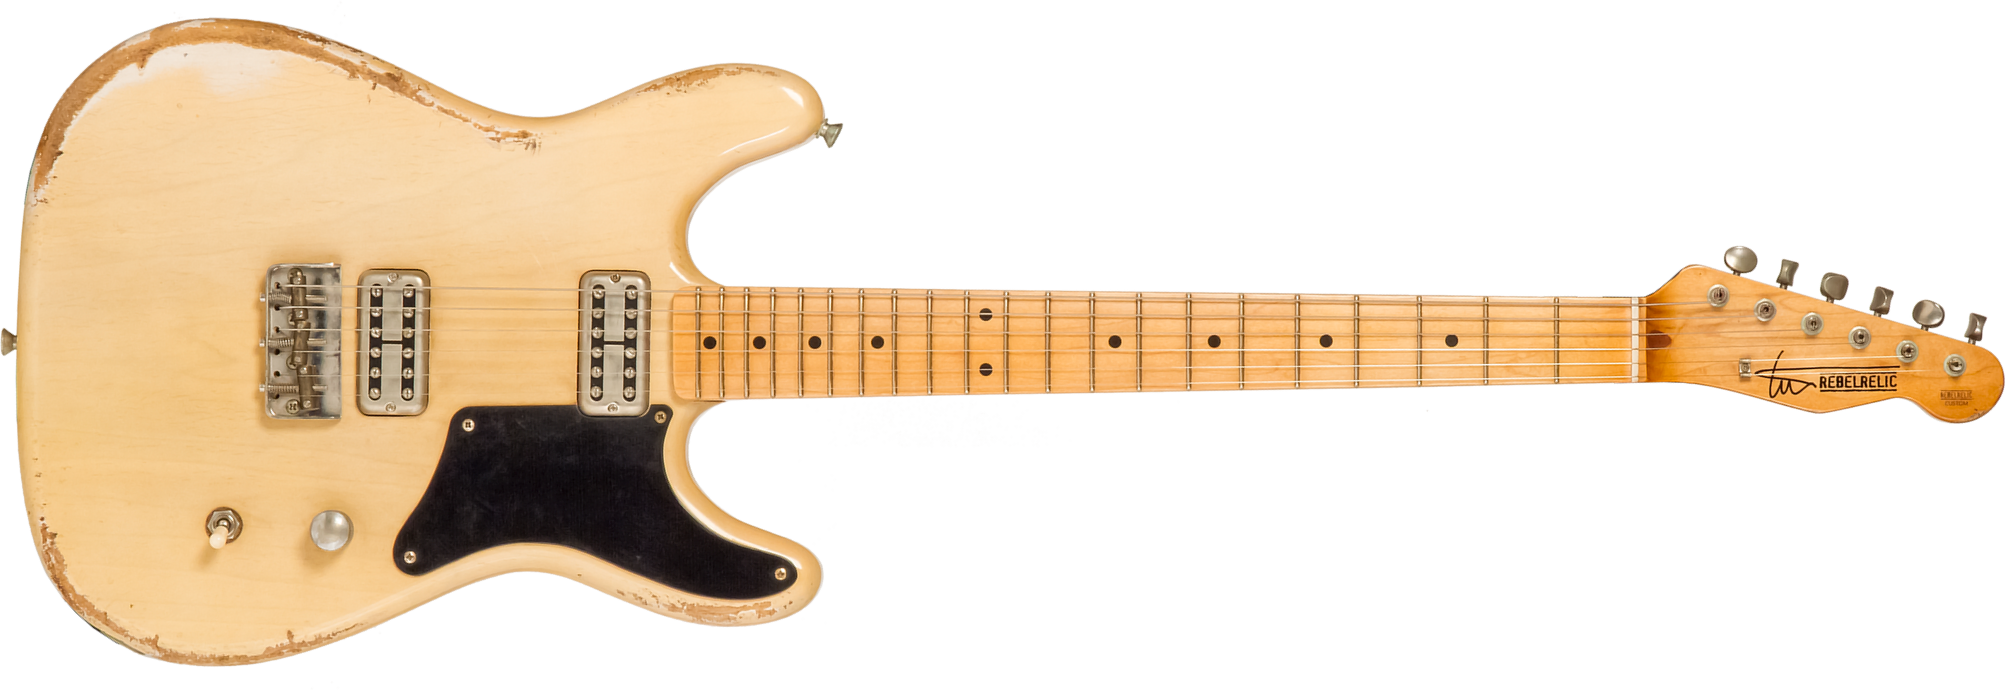 Rebelrelic Tux Monarch 2h Ht Rw #62081 - Transparent Eden Yellow - Str shape electric guitar - Main picture